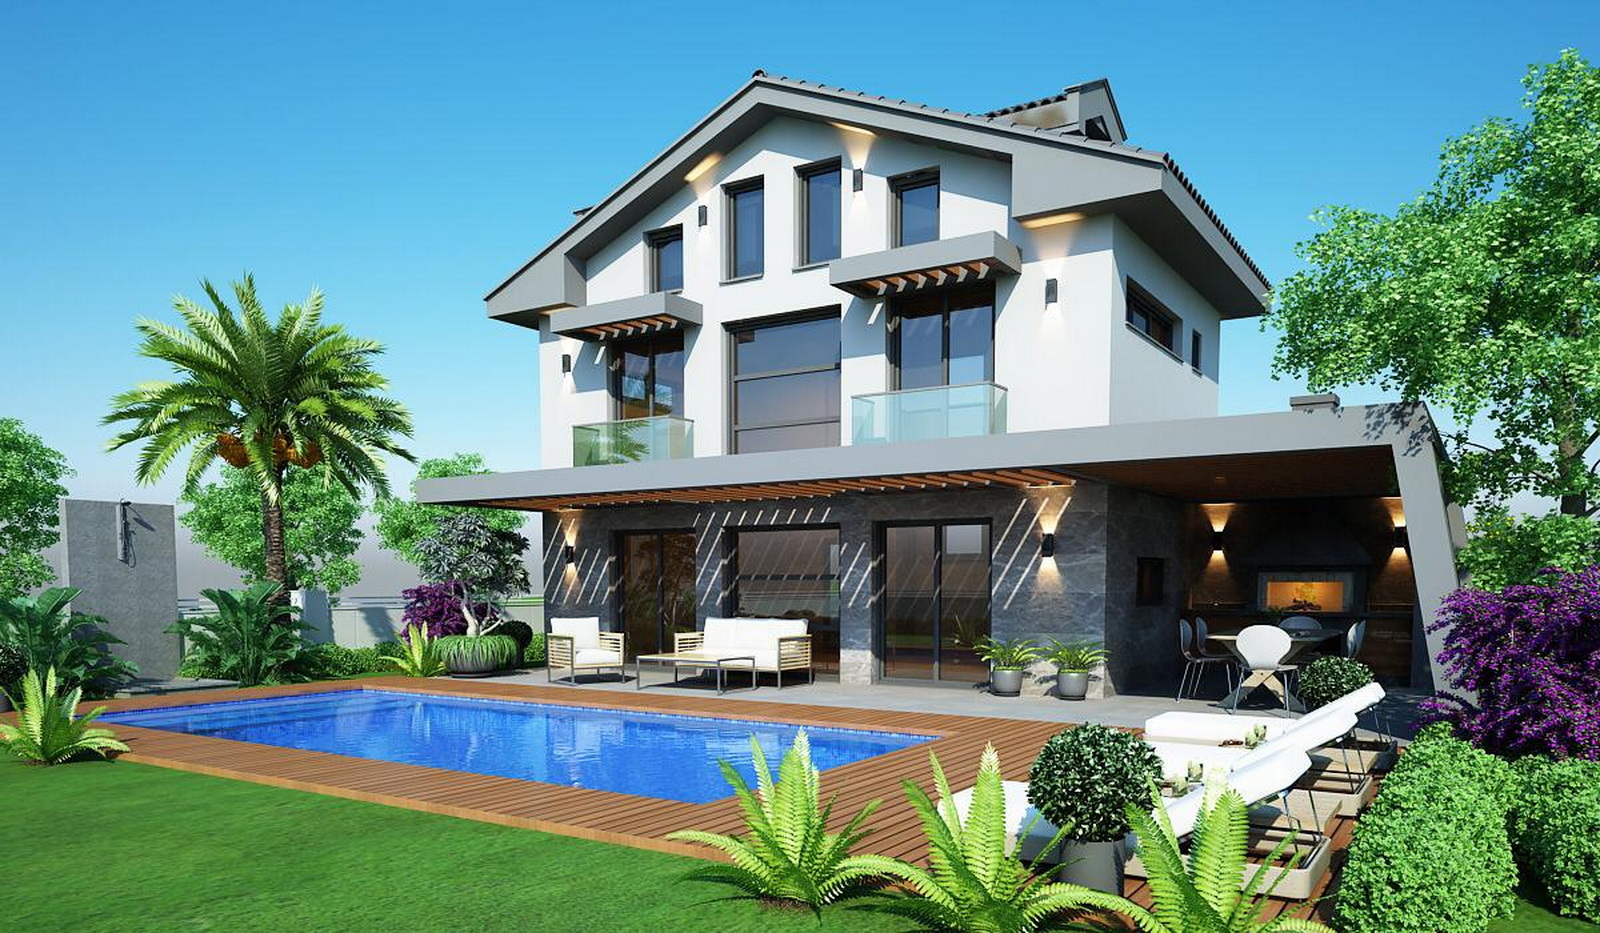 Beautiful Exquisite Luxury 4 Bedroom Villas for Sale in Ovacik